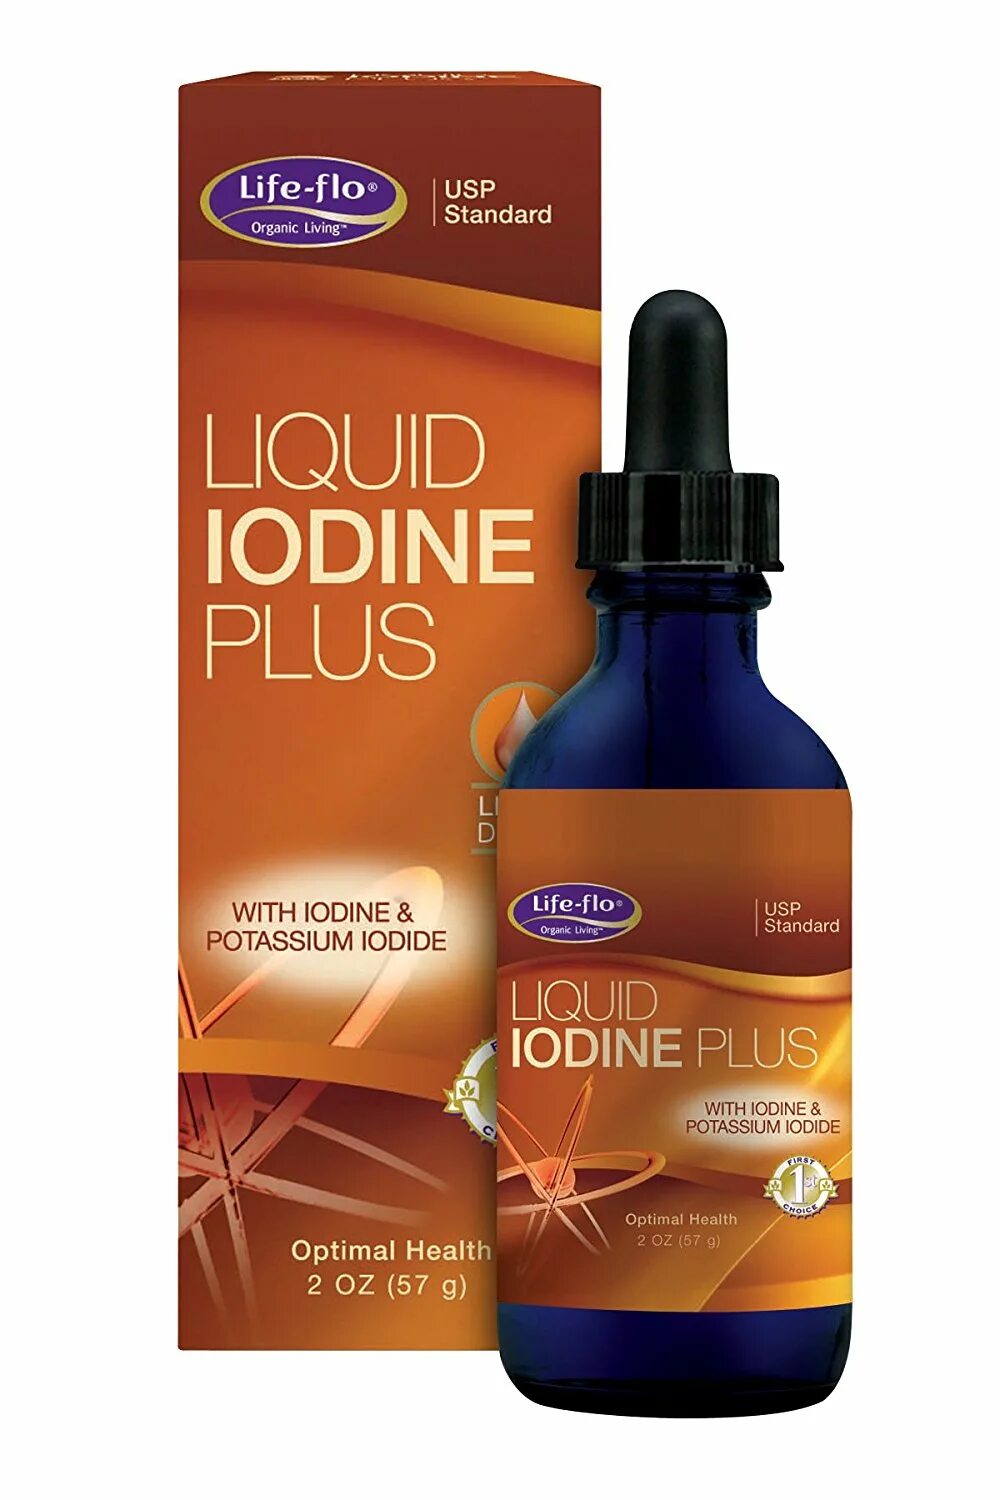 Йод flo. Life Flo Liquid Iodine. Life Flo йод. Жидкий йод Life Flo. Liquid Iodine Plus Life Flo.